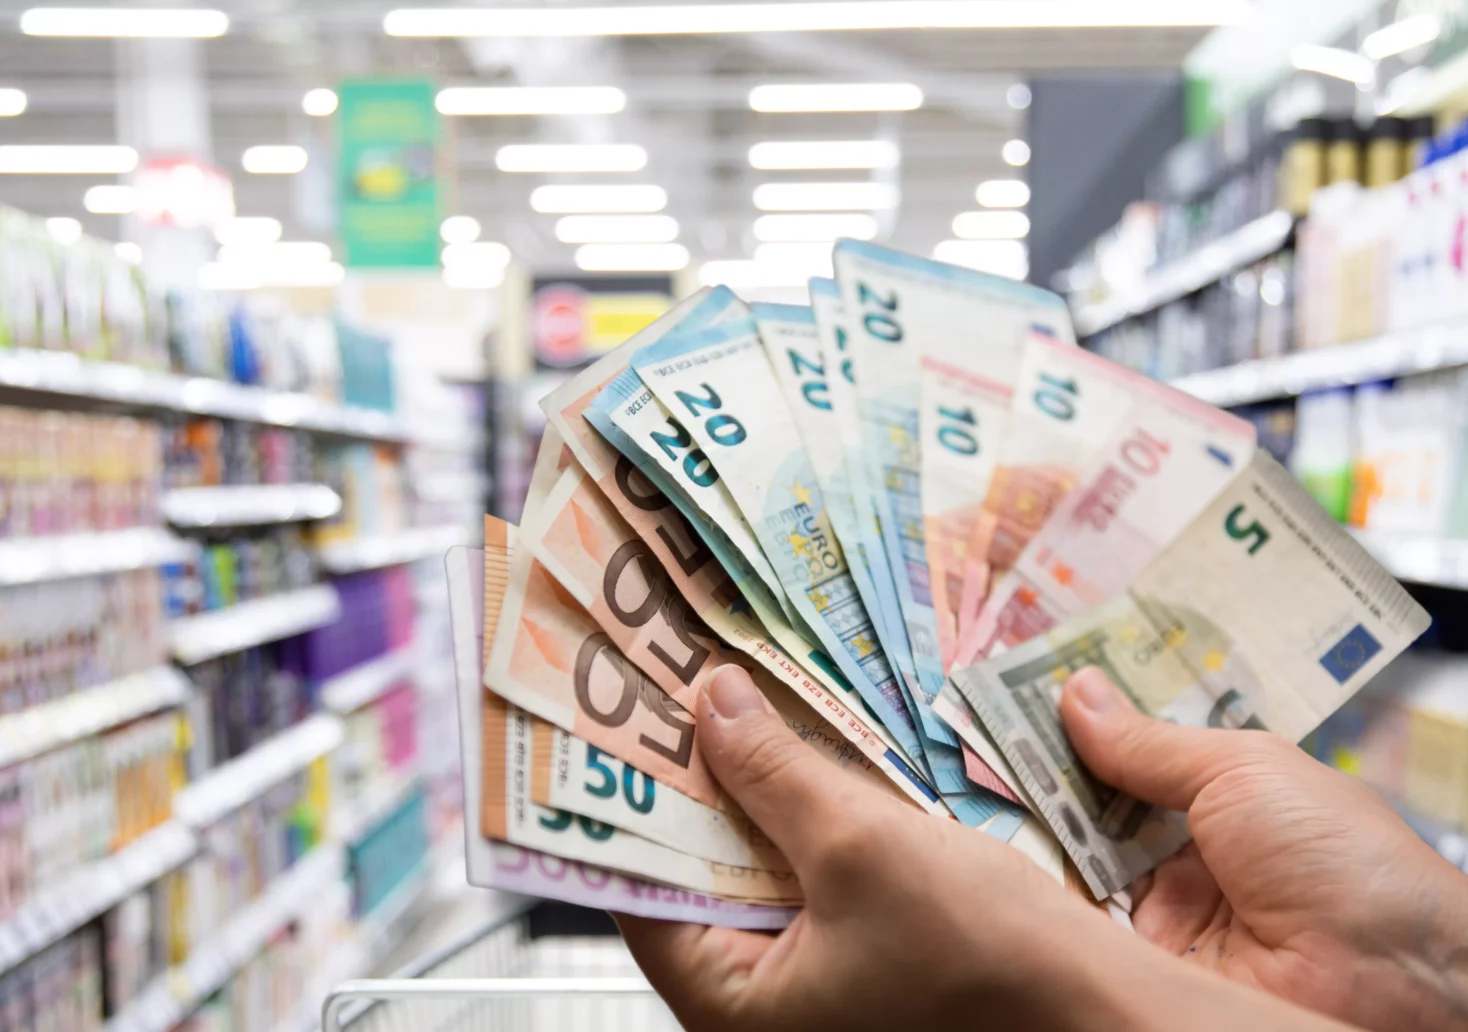 Ein Bild auf 5min.at zeigt einen Bündel Geldscheine vor einem Supermarktregal.